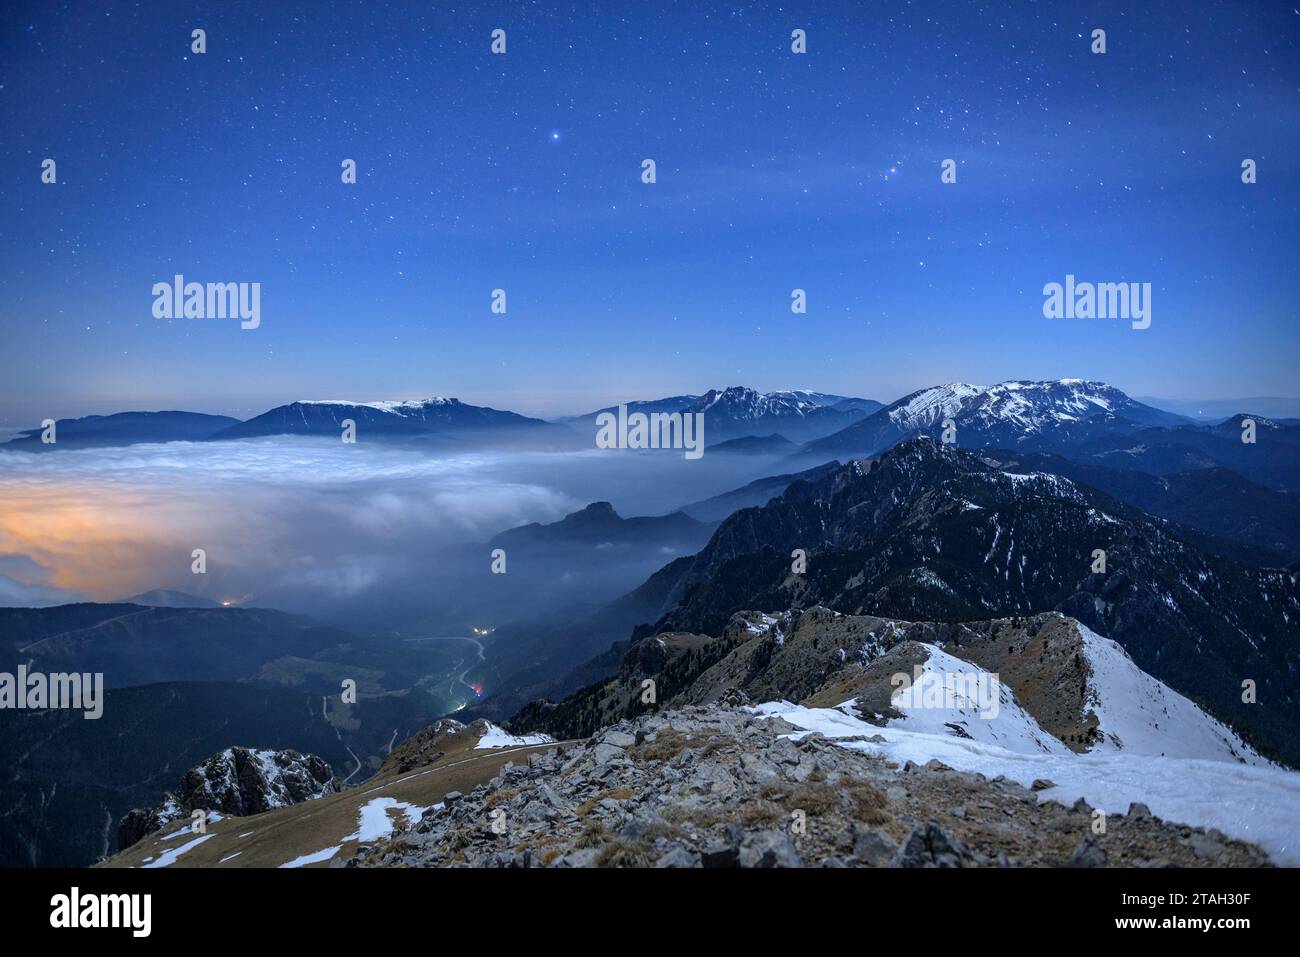 Notte invernale sulla cima della Tosa d'Alp, guardando verso Alt Berguedà con un mare di nuvole basse (Berguedà, Catalogna, Spagna, Pirenei) Foto Stock